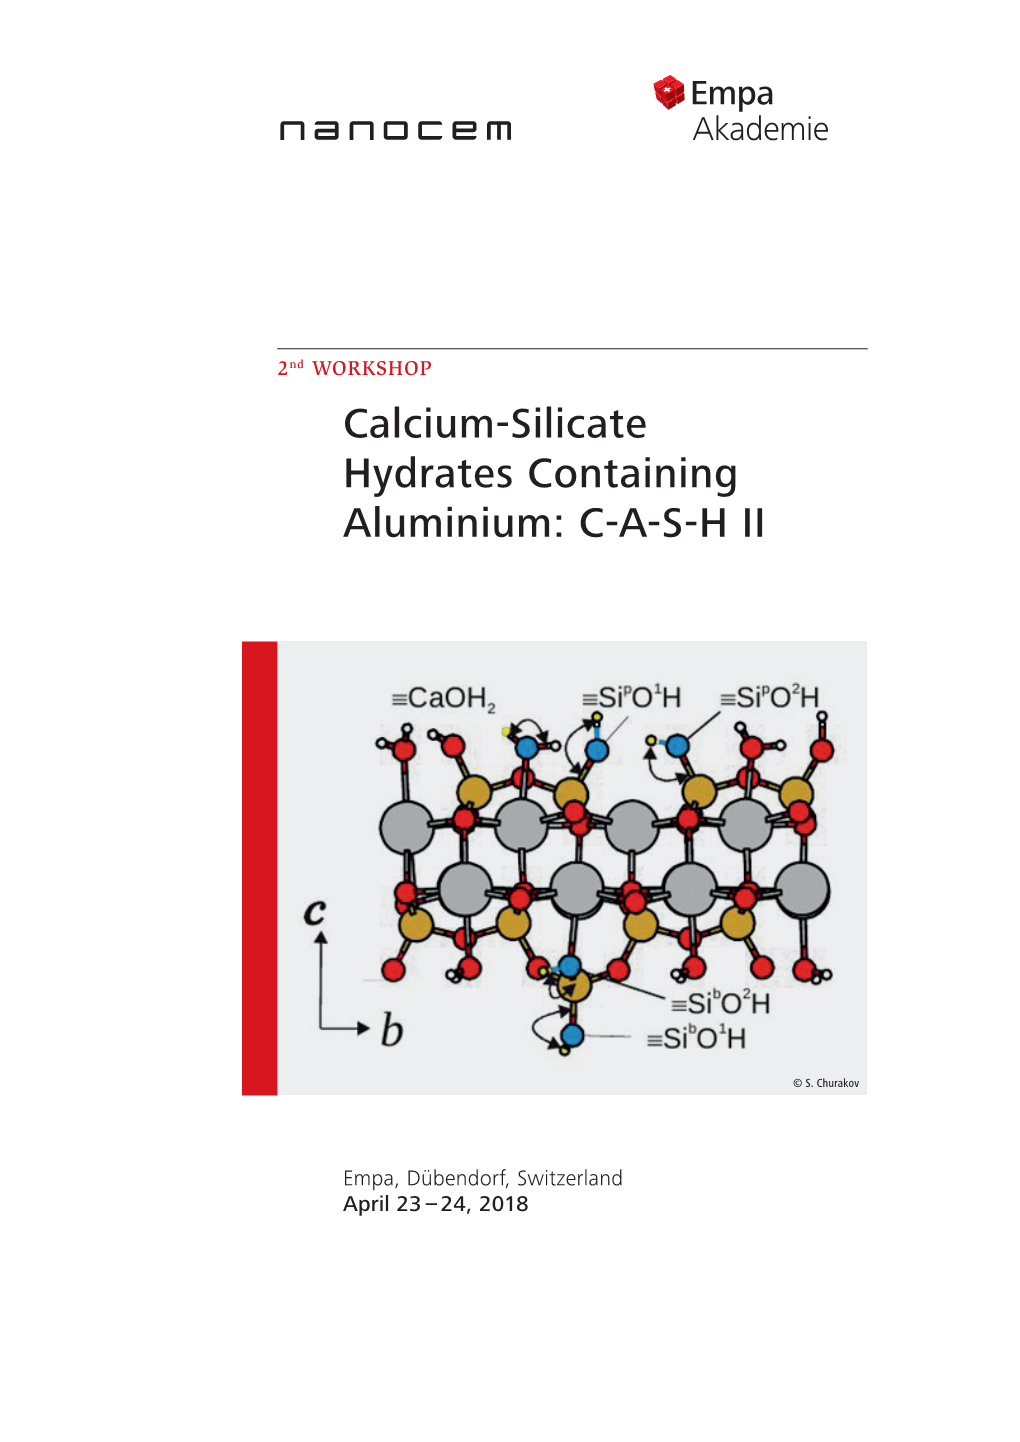 Calcium-Silicate Hydrates Containing Aluminium: C-A-S-H II